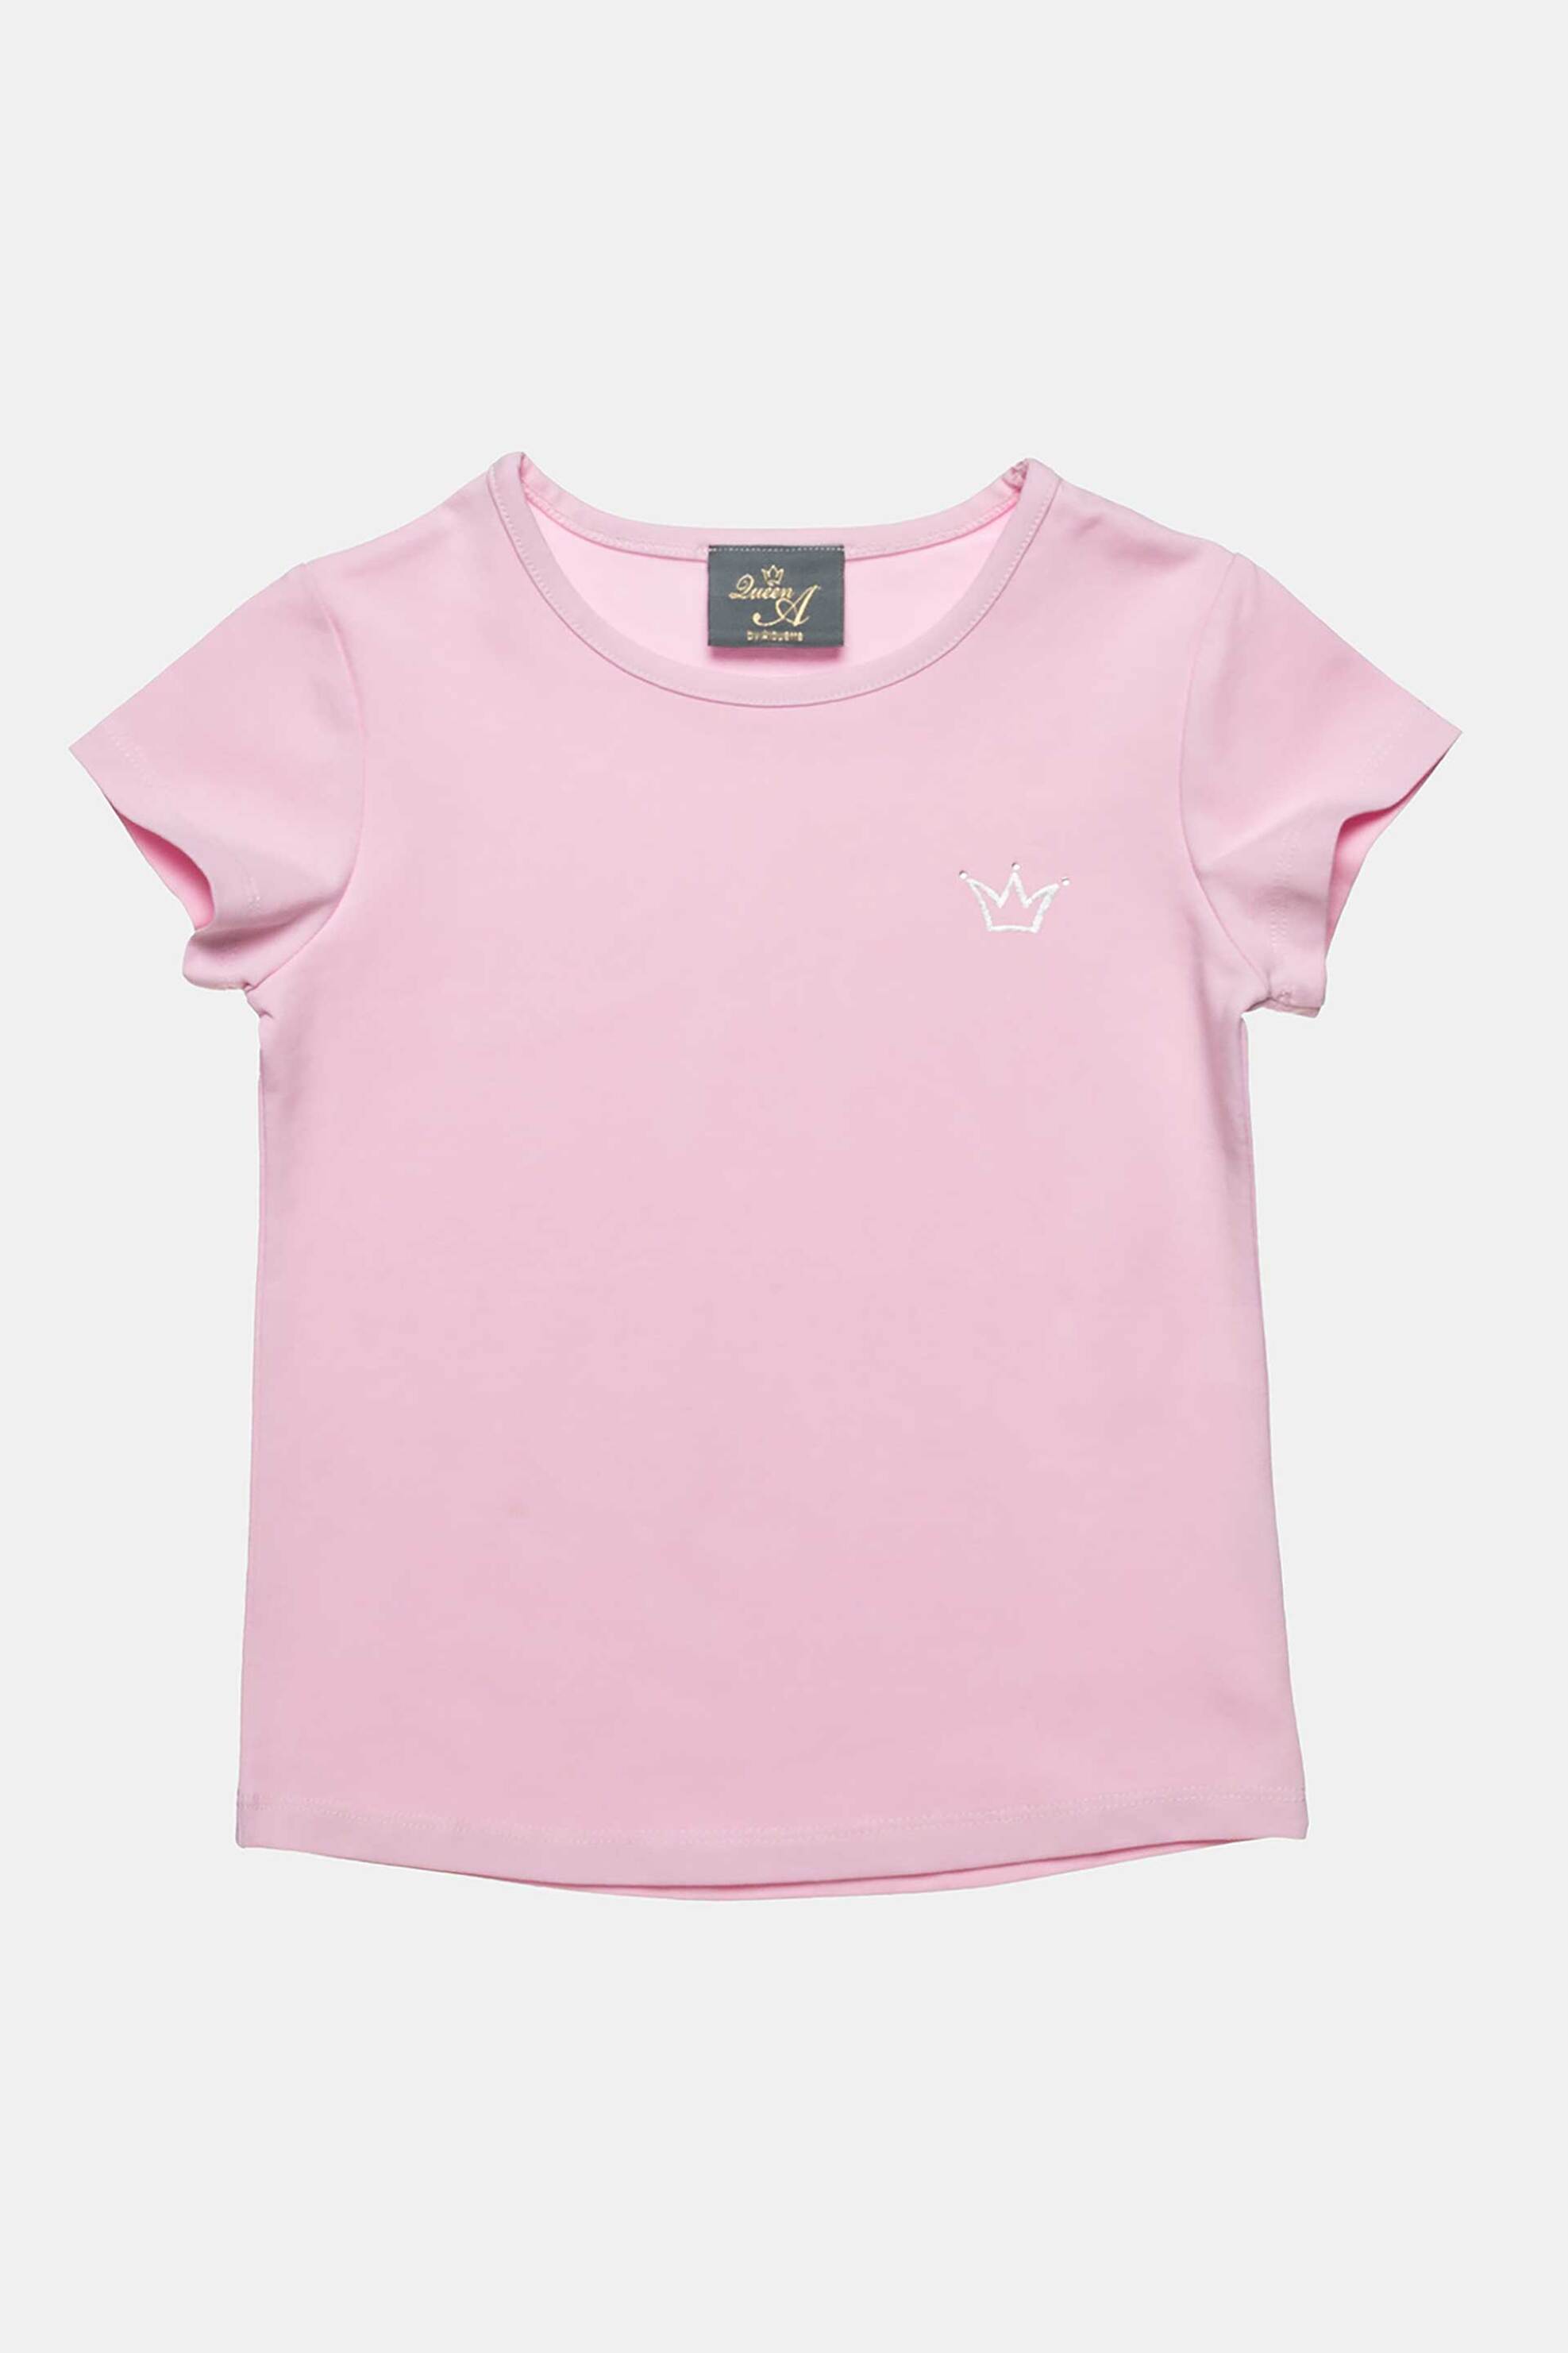 Παιδικά Ρούχα, Παπούτσια & Παιχνίδια > Παιδικά Ρούχα & Αξεσουάρ για Κορίτσια > Παιδικές Μπλούζες για Κορίτσια > Παιδικά T-Shirts για Κορίτσια Alouette παιδικό T-shirt με μεταλλιζέ κορώνα με στρας (6-16 ετών) - 00952921 Ροζ